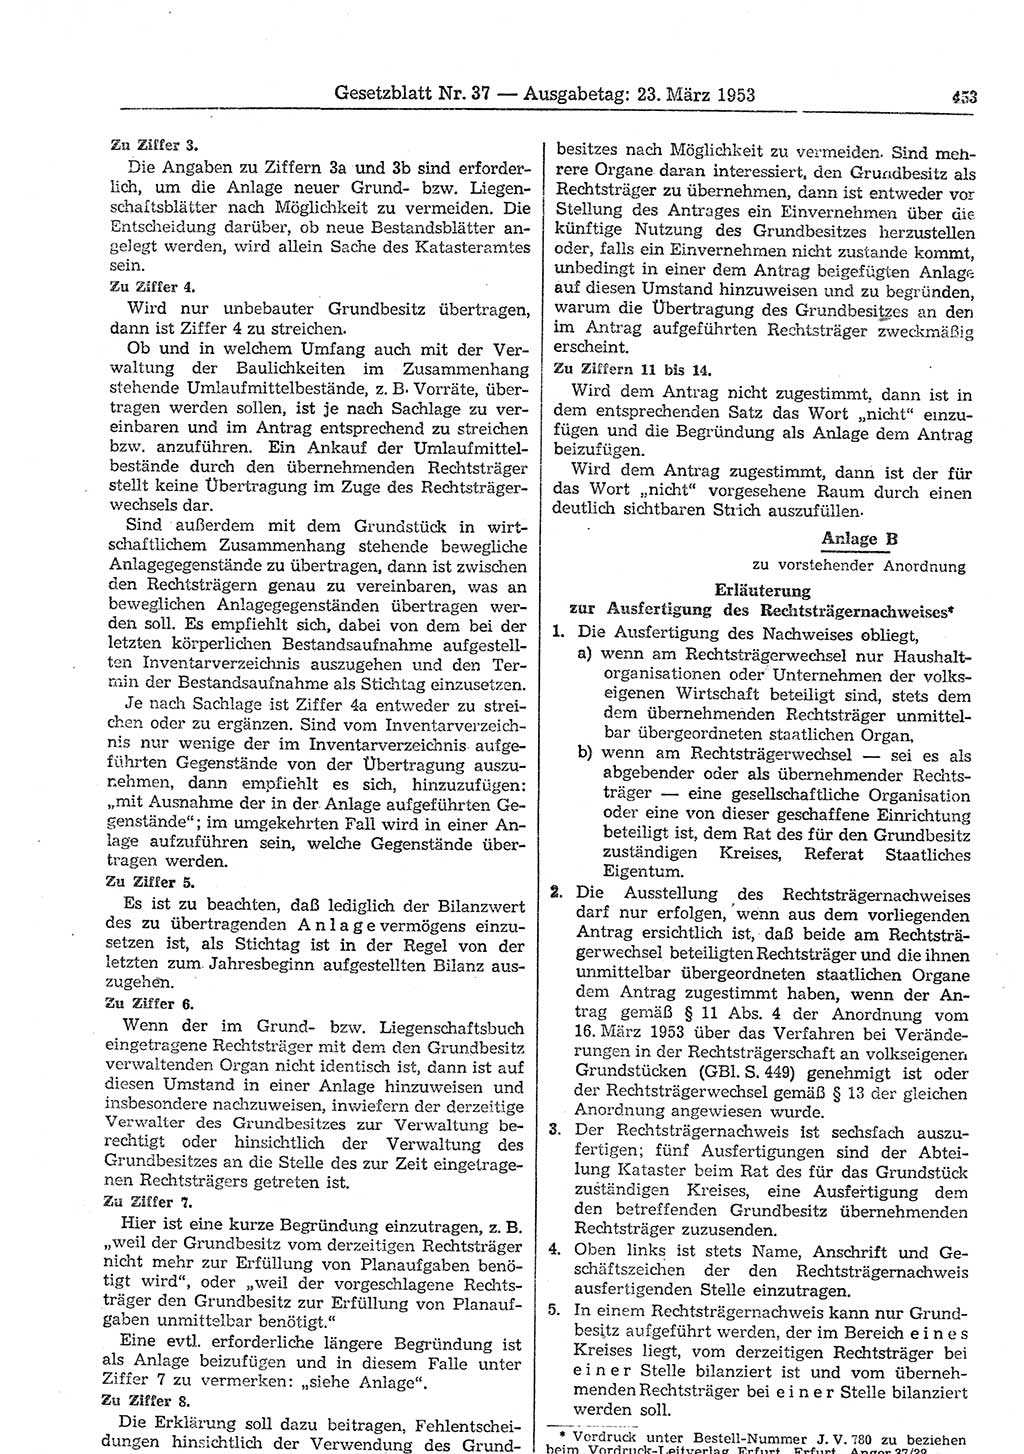 Gesetzblatt (GBl.) der Deutschen Demokratischen Republik (DDR) 1953, Seite 453 (GBl. DDR 1953, S. 453)